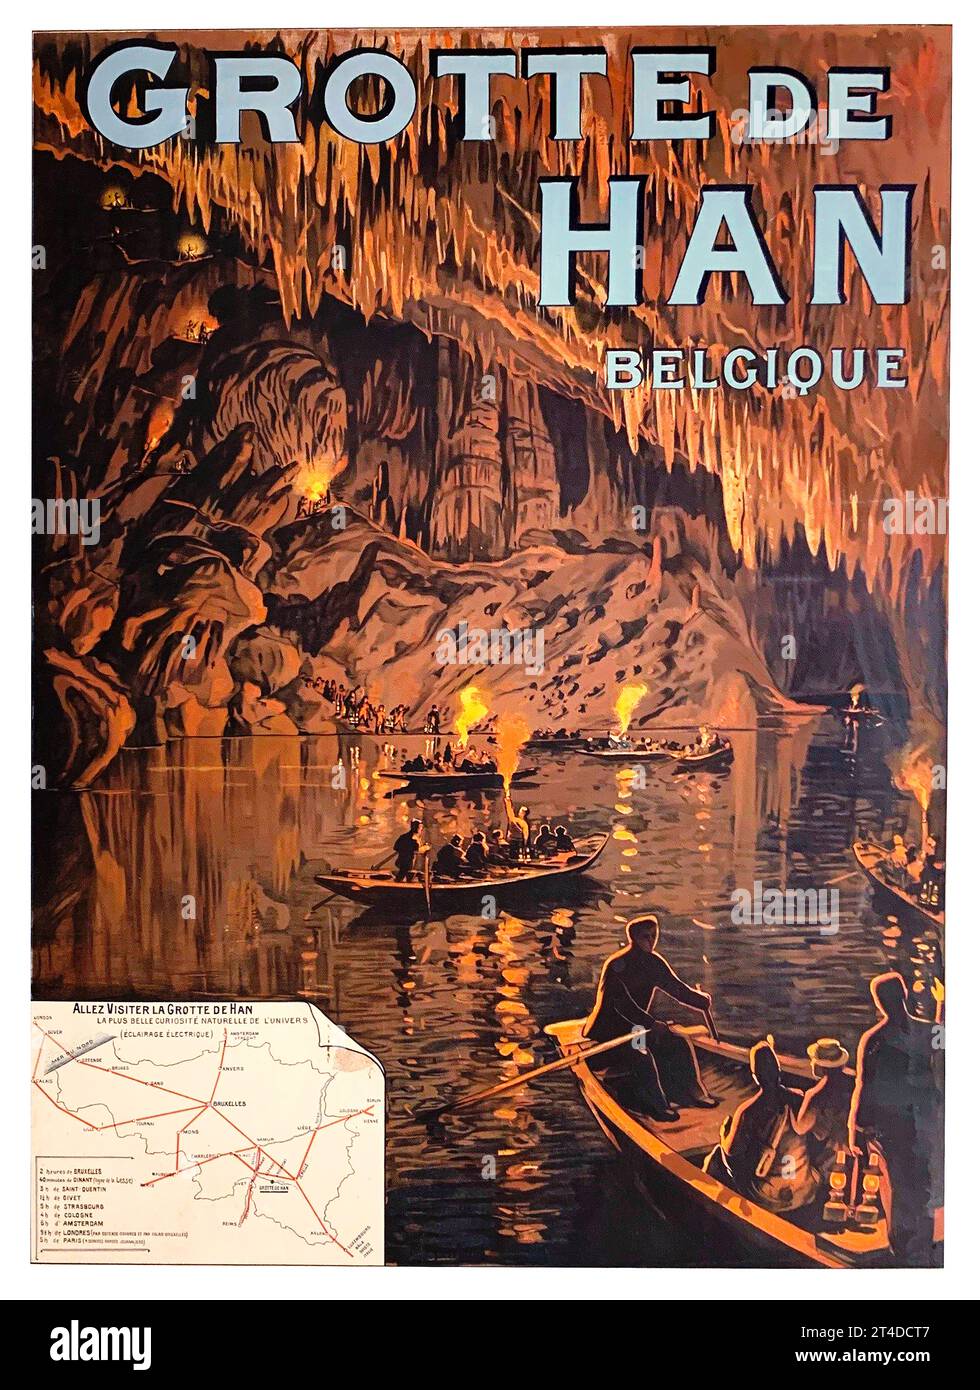 Affiche de voyage vintage c1800 pour la Grotte de Han en Belgique, Un grand système de grottes et une grande attraction touristique. Banque D'Images